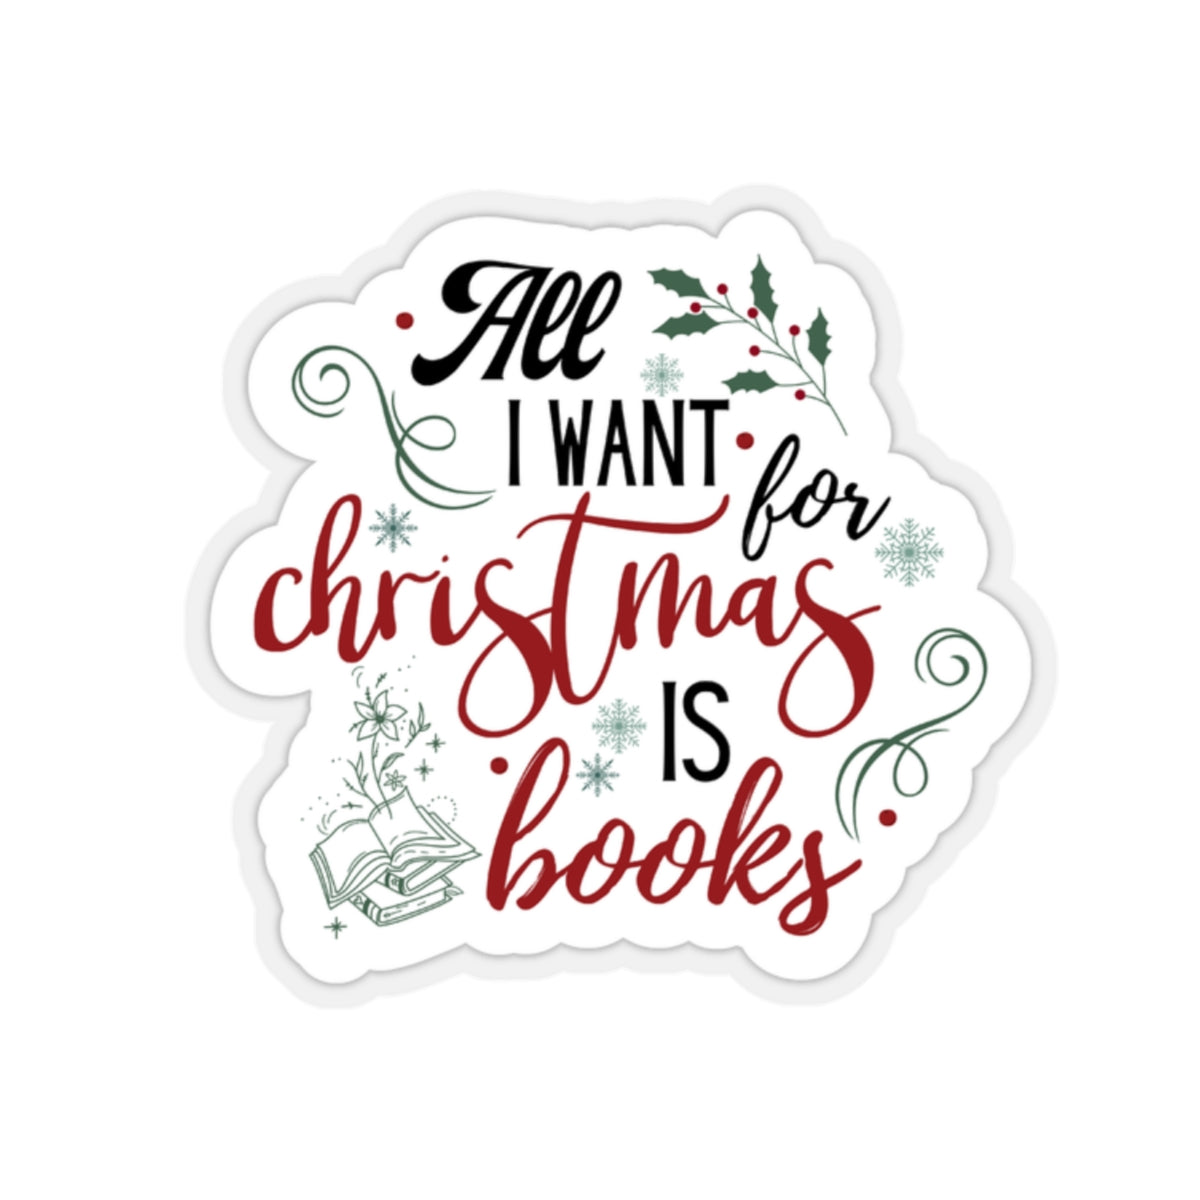 Bookish ChristmasKiss-Cut Stickers